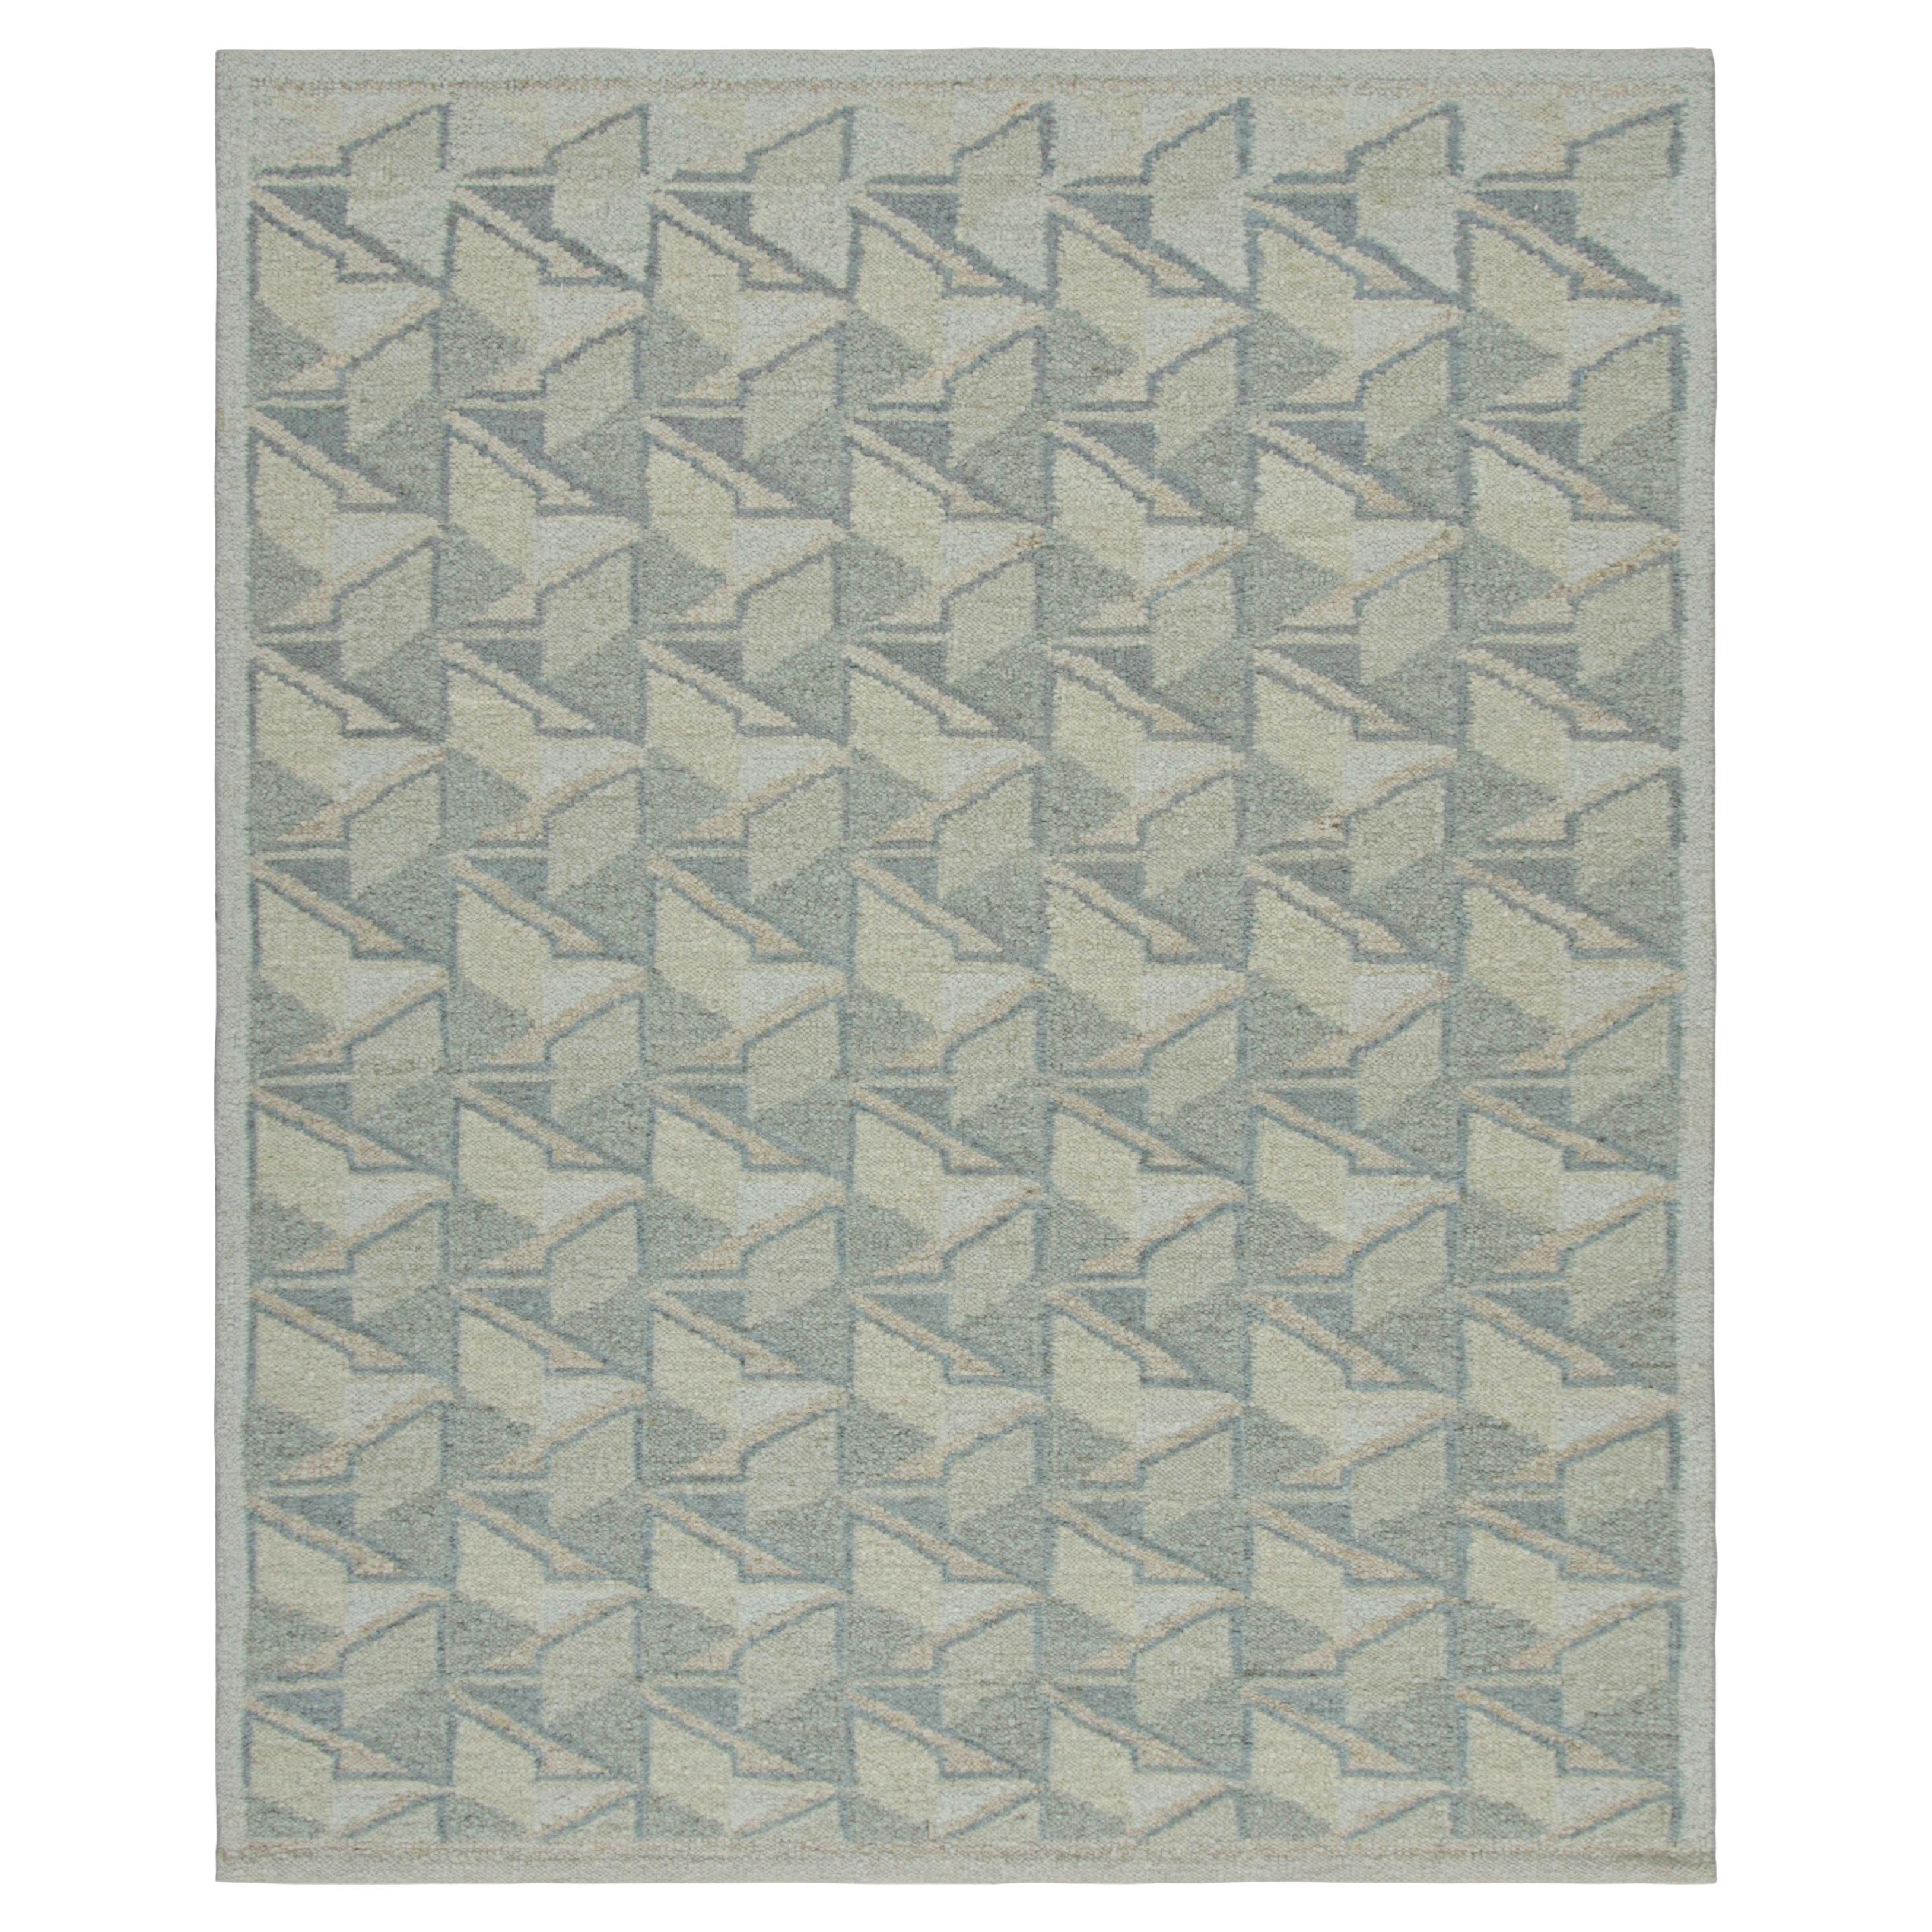 Tapis de style scandinave à motif géométrique bleu, blanc et crème de Rug & Kilim